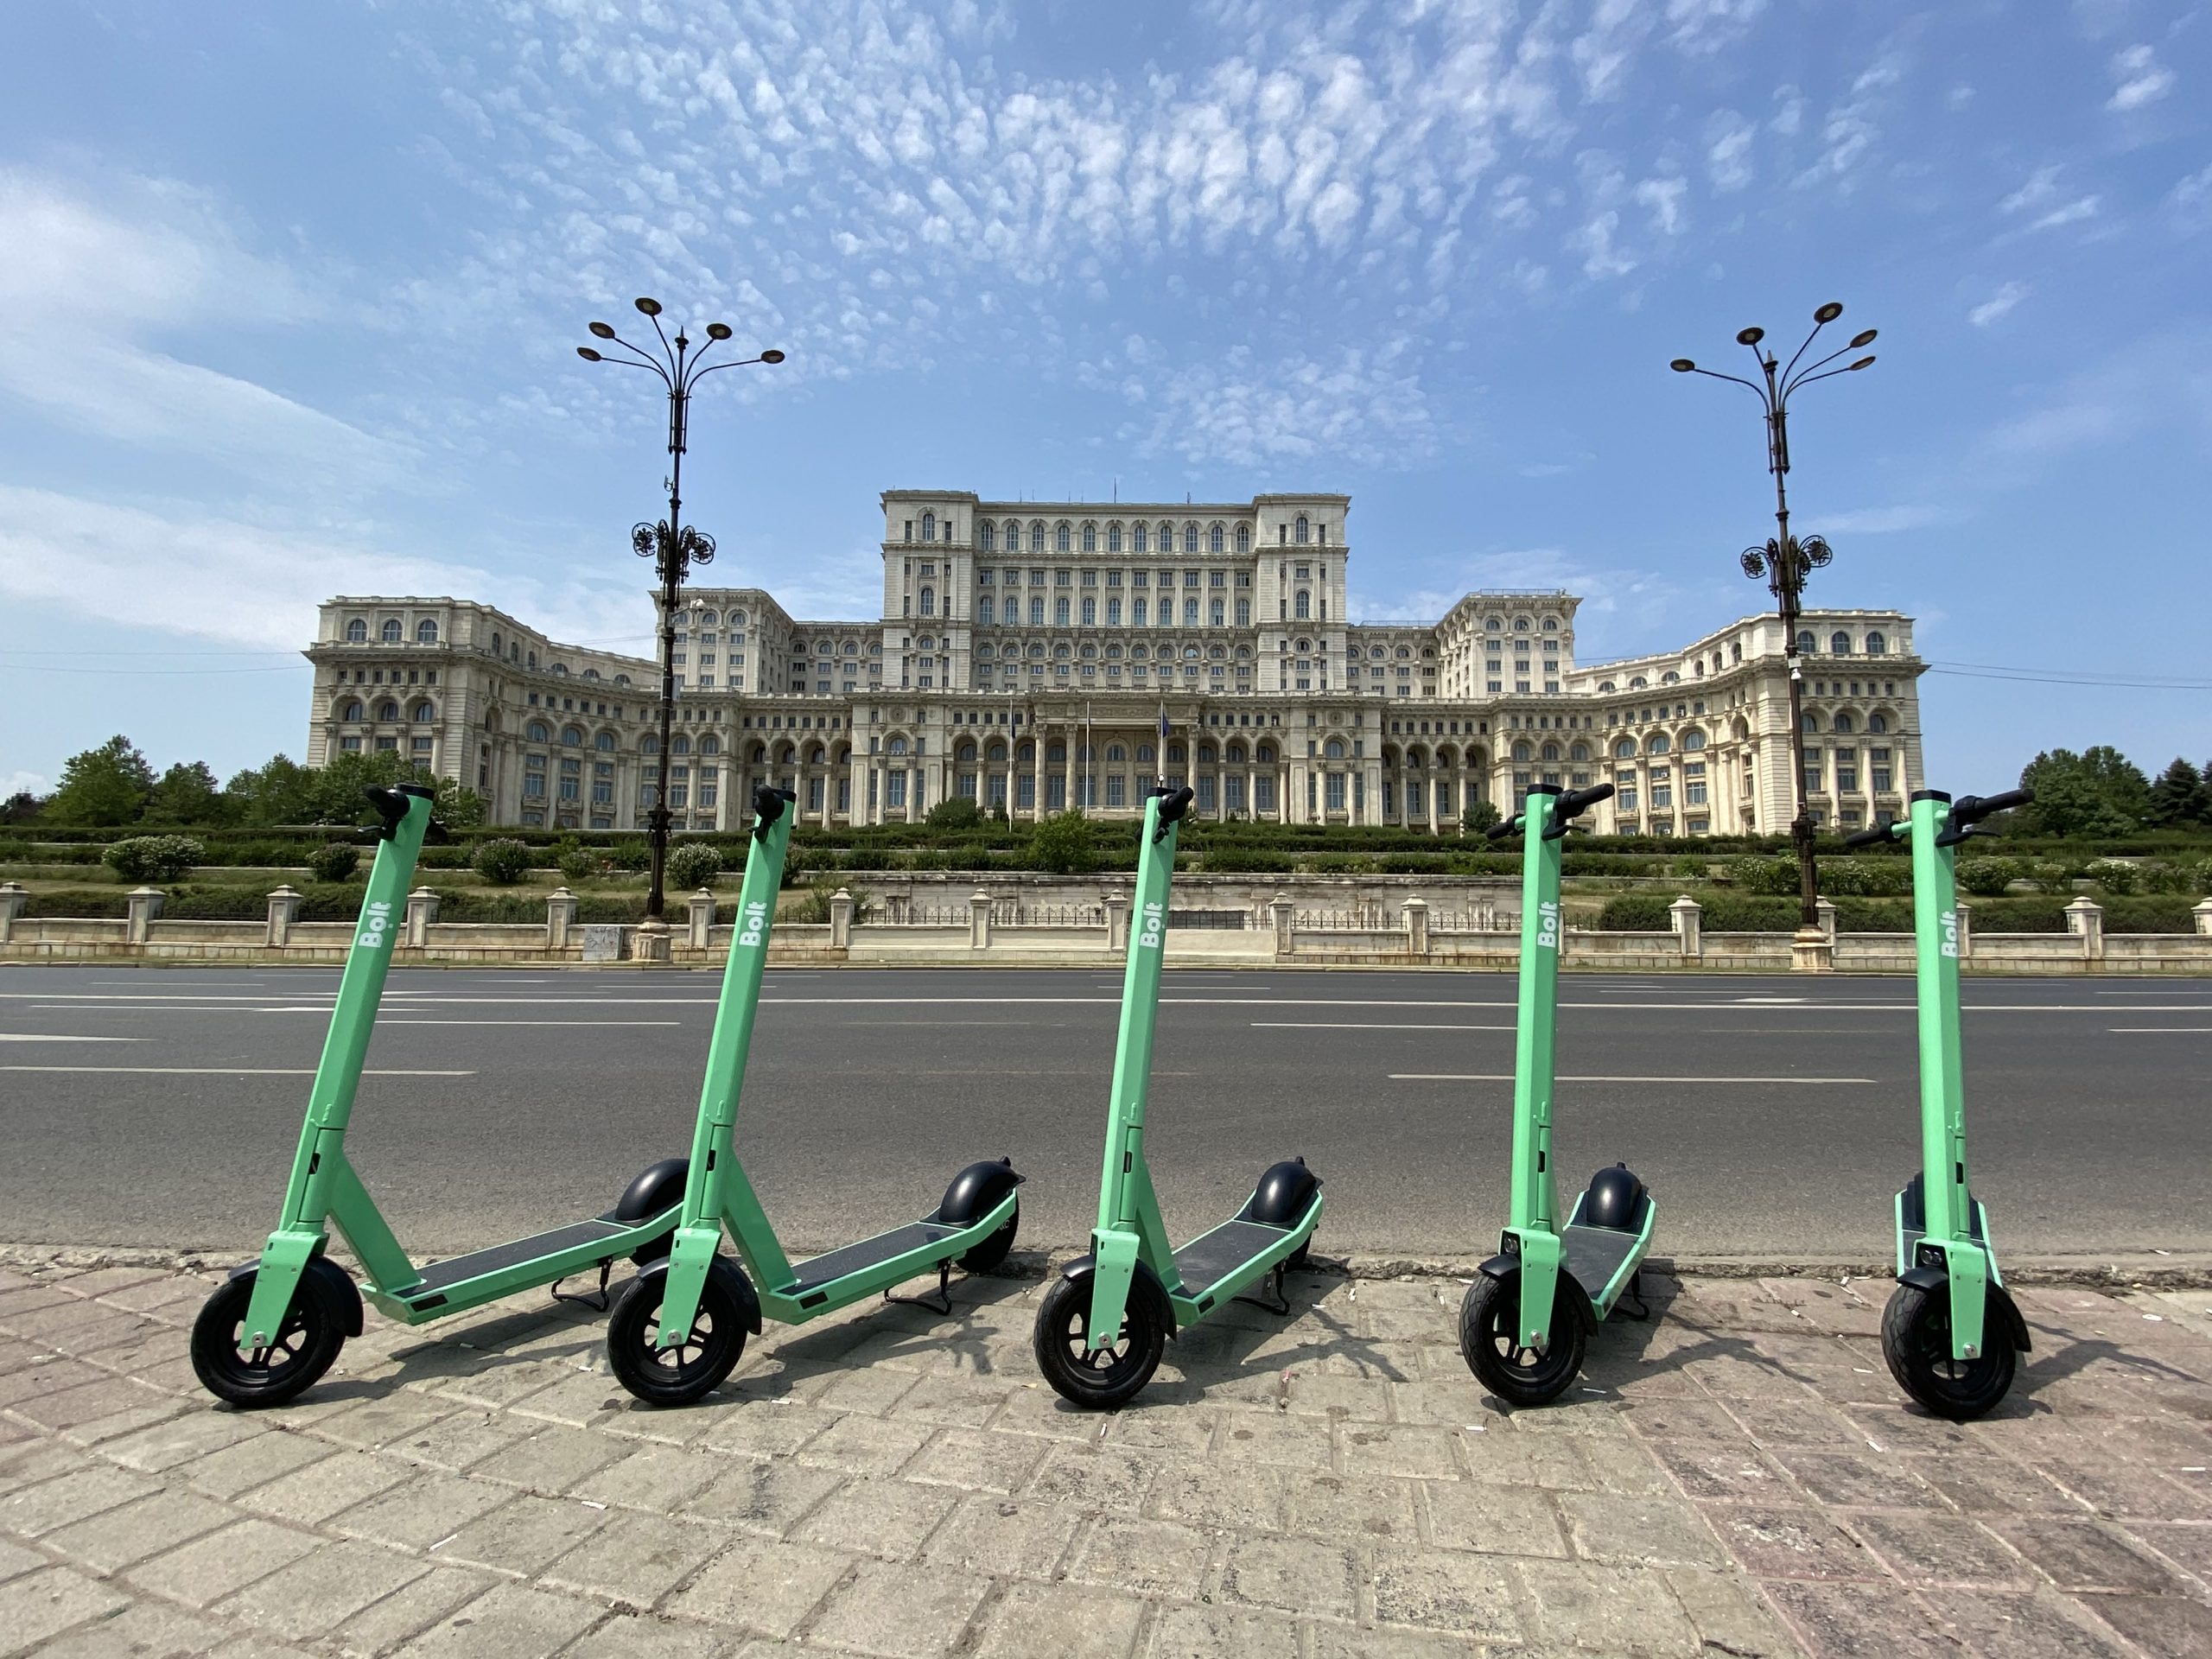 Primăria Capitalei recomandă ca trotinetele electrice închiriate în București să poată fi conduse doar de persoane peste 14 ani, să aibă actul de identitate asupra lor și să respecte regulile de circulație